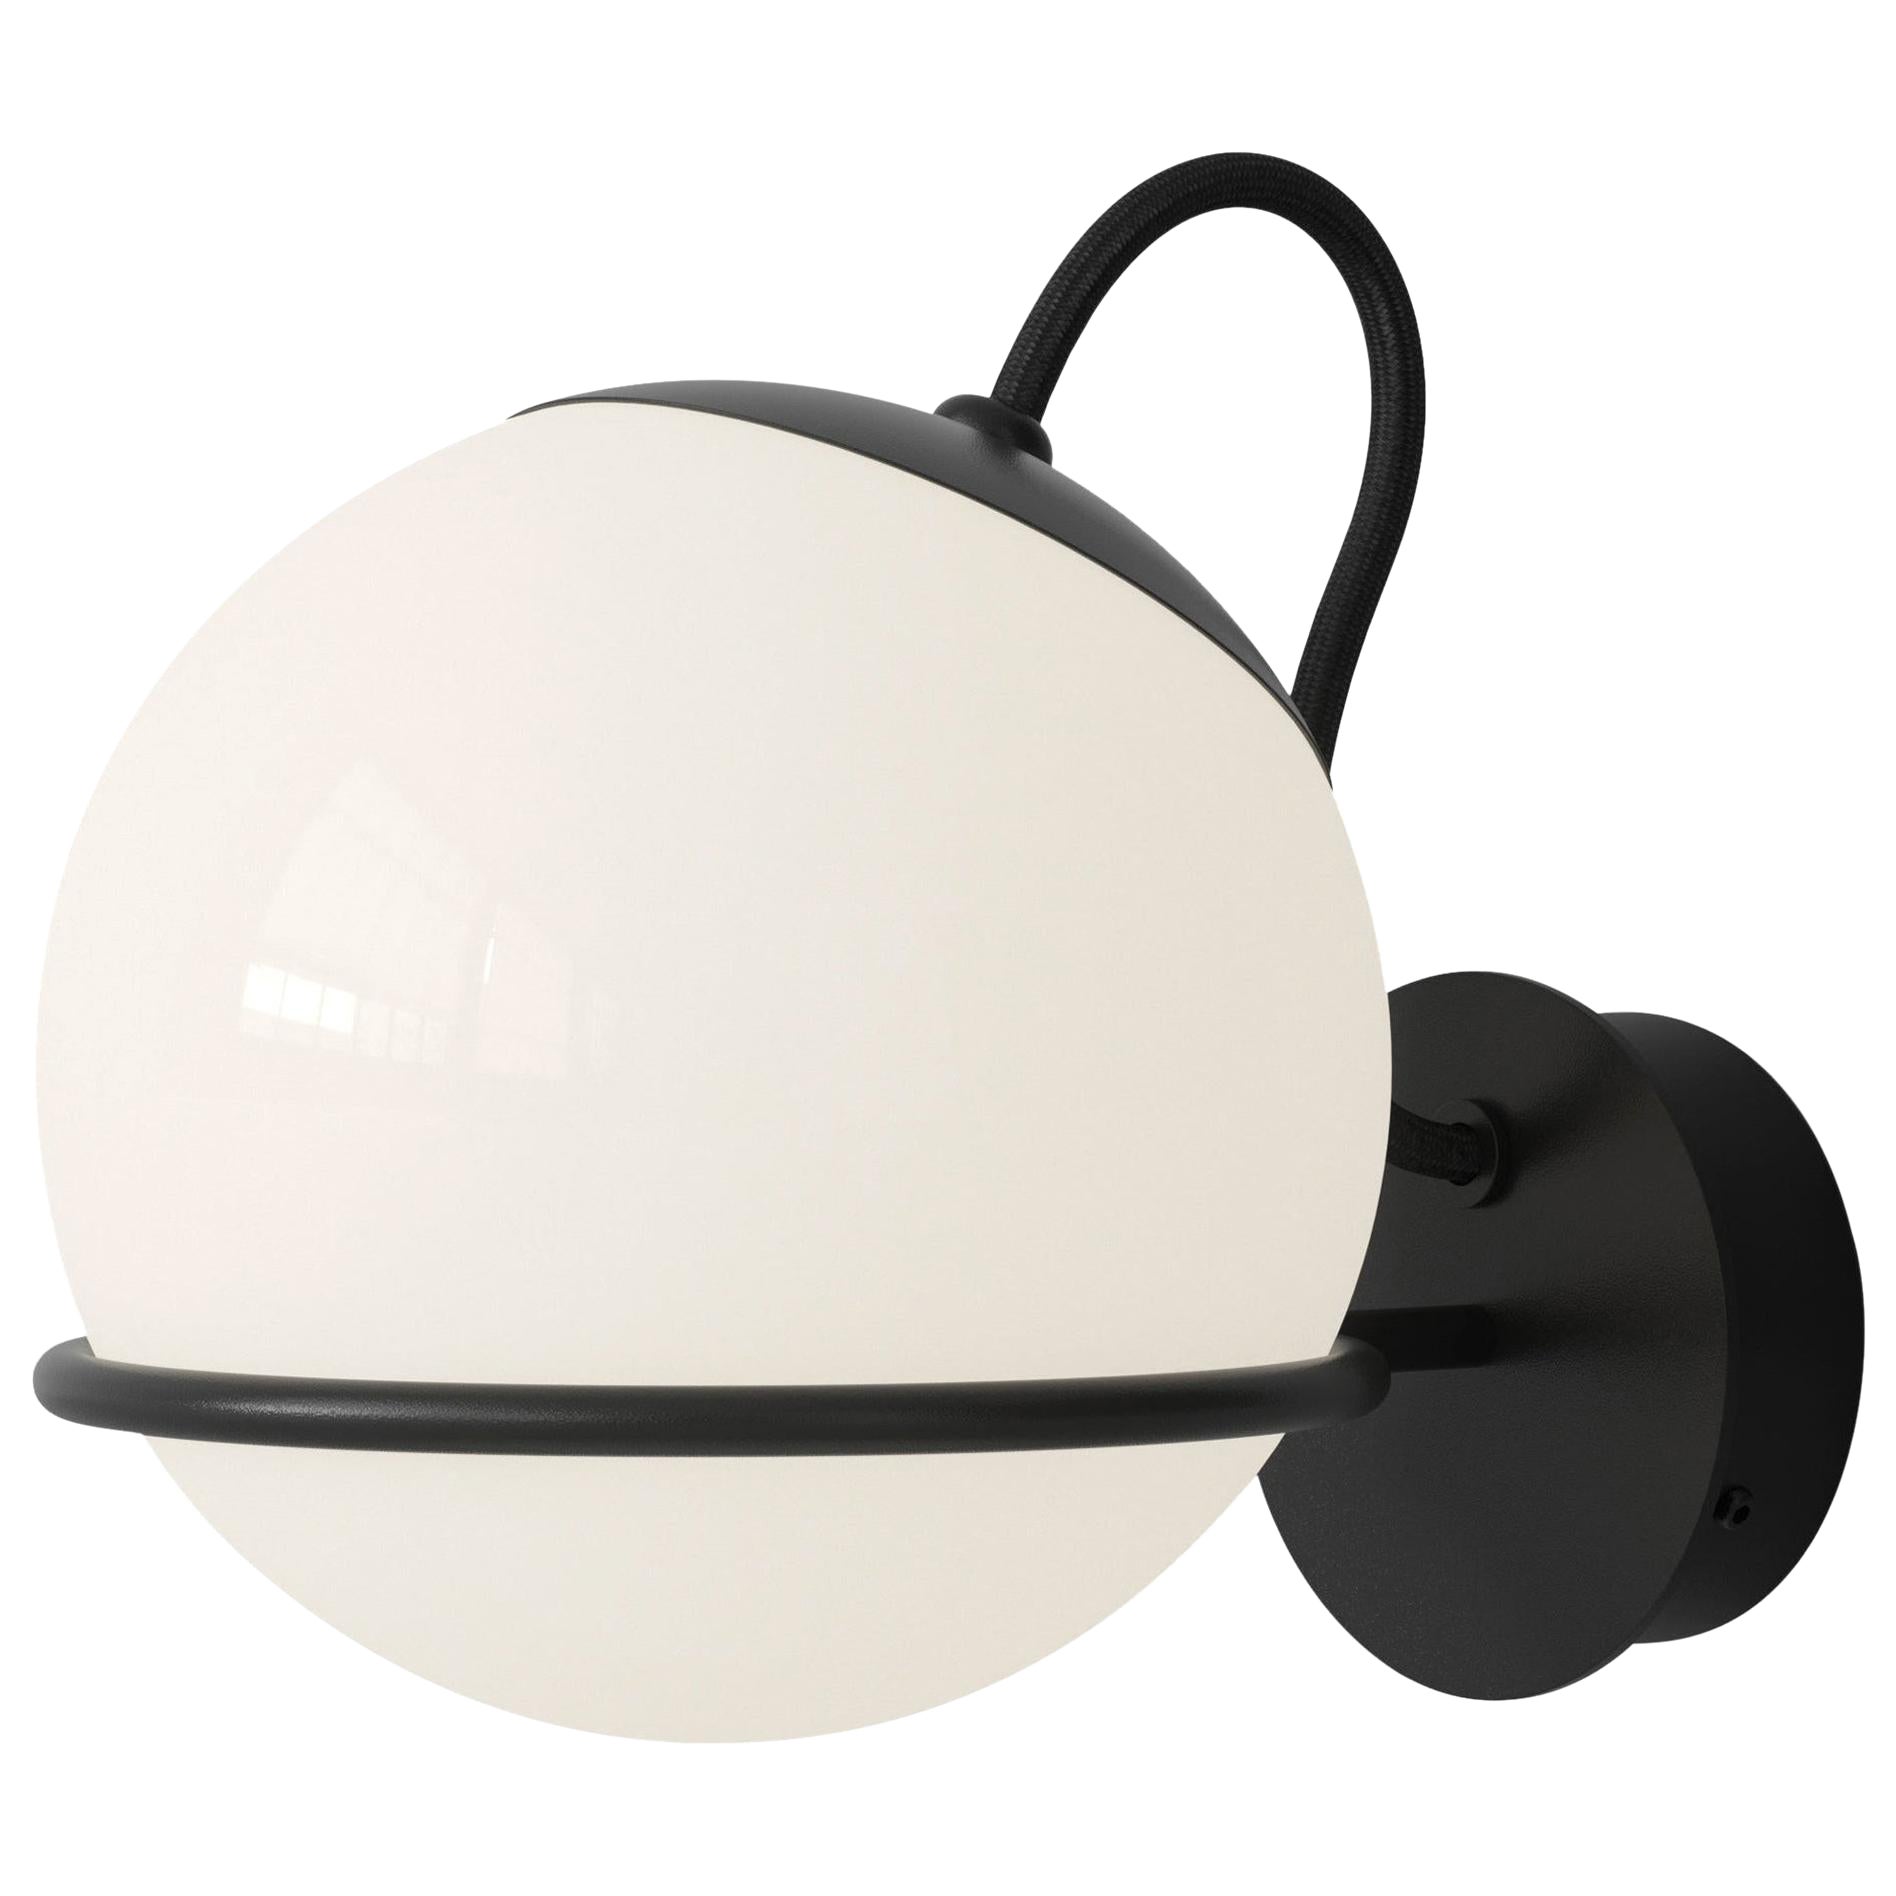 Gino Sarfatti-Lampe, Modell 238/1, schwarz, von Astep, montiert